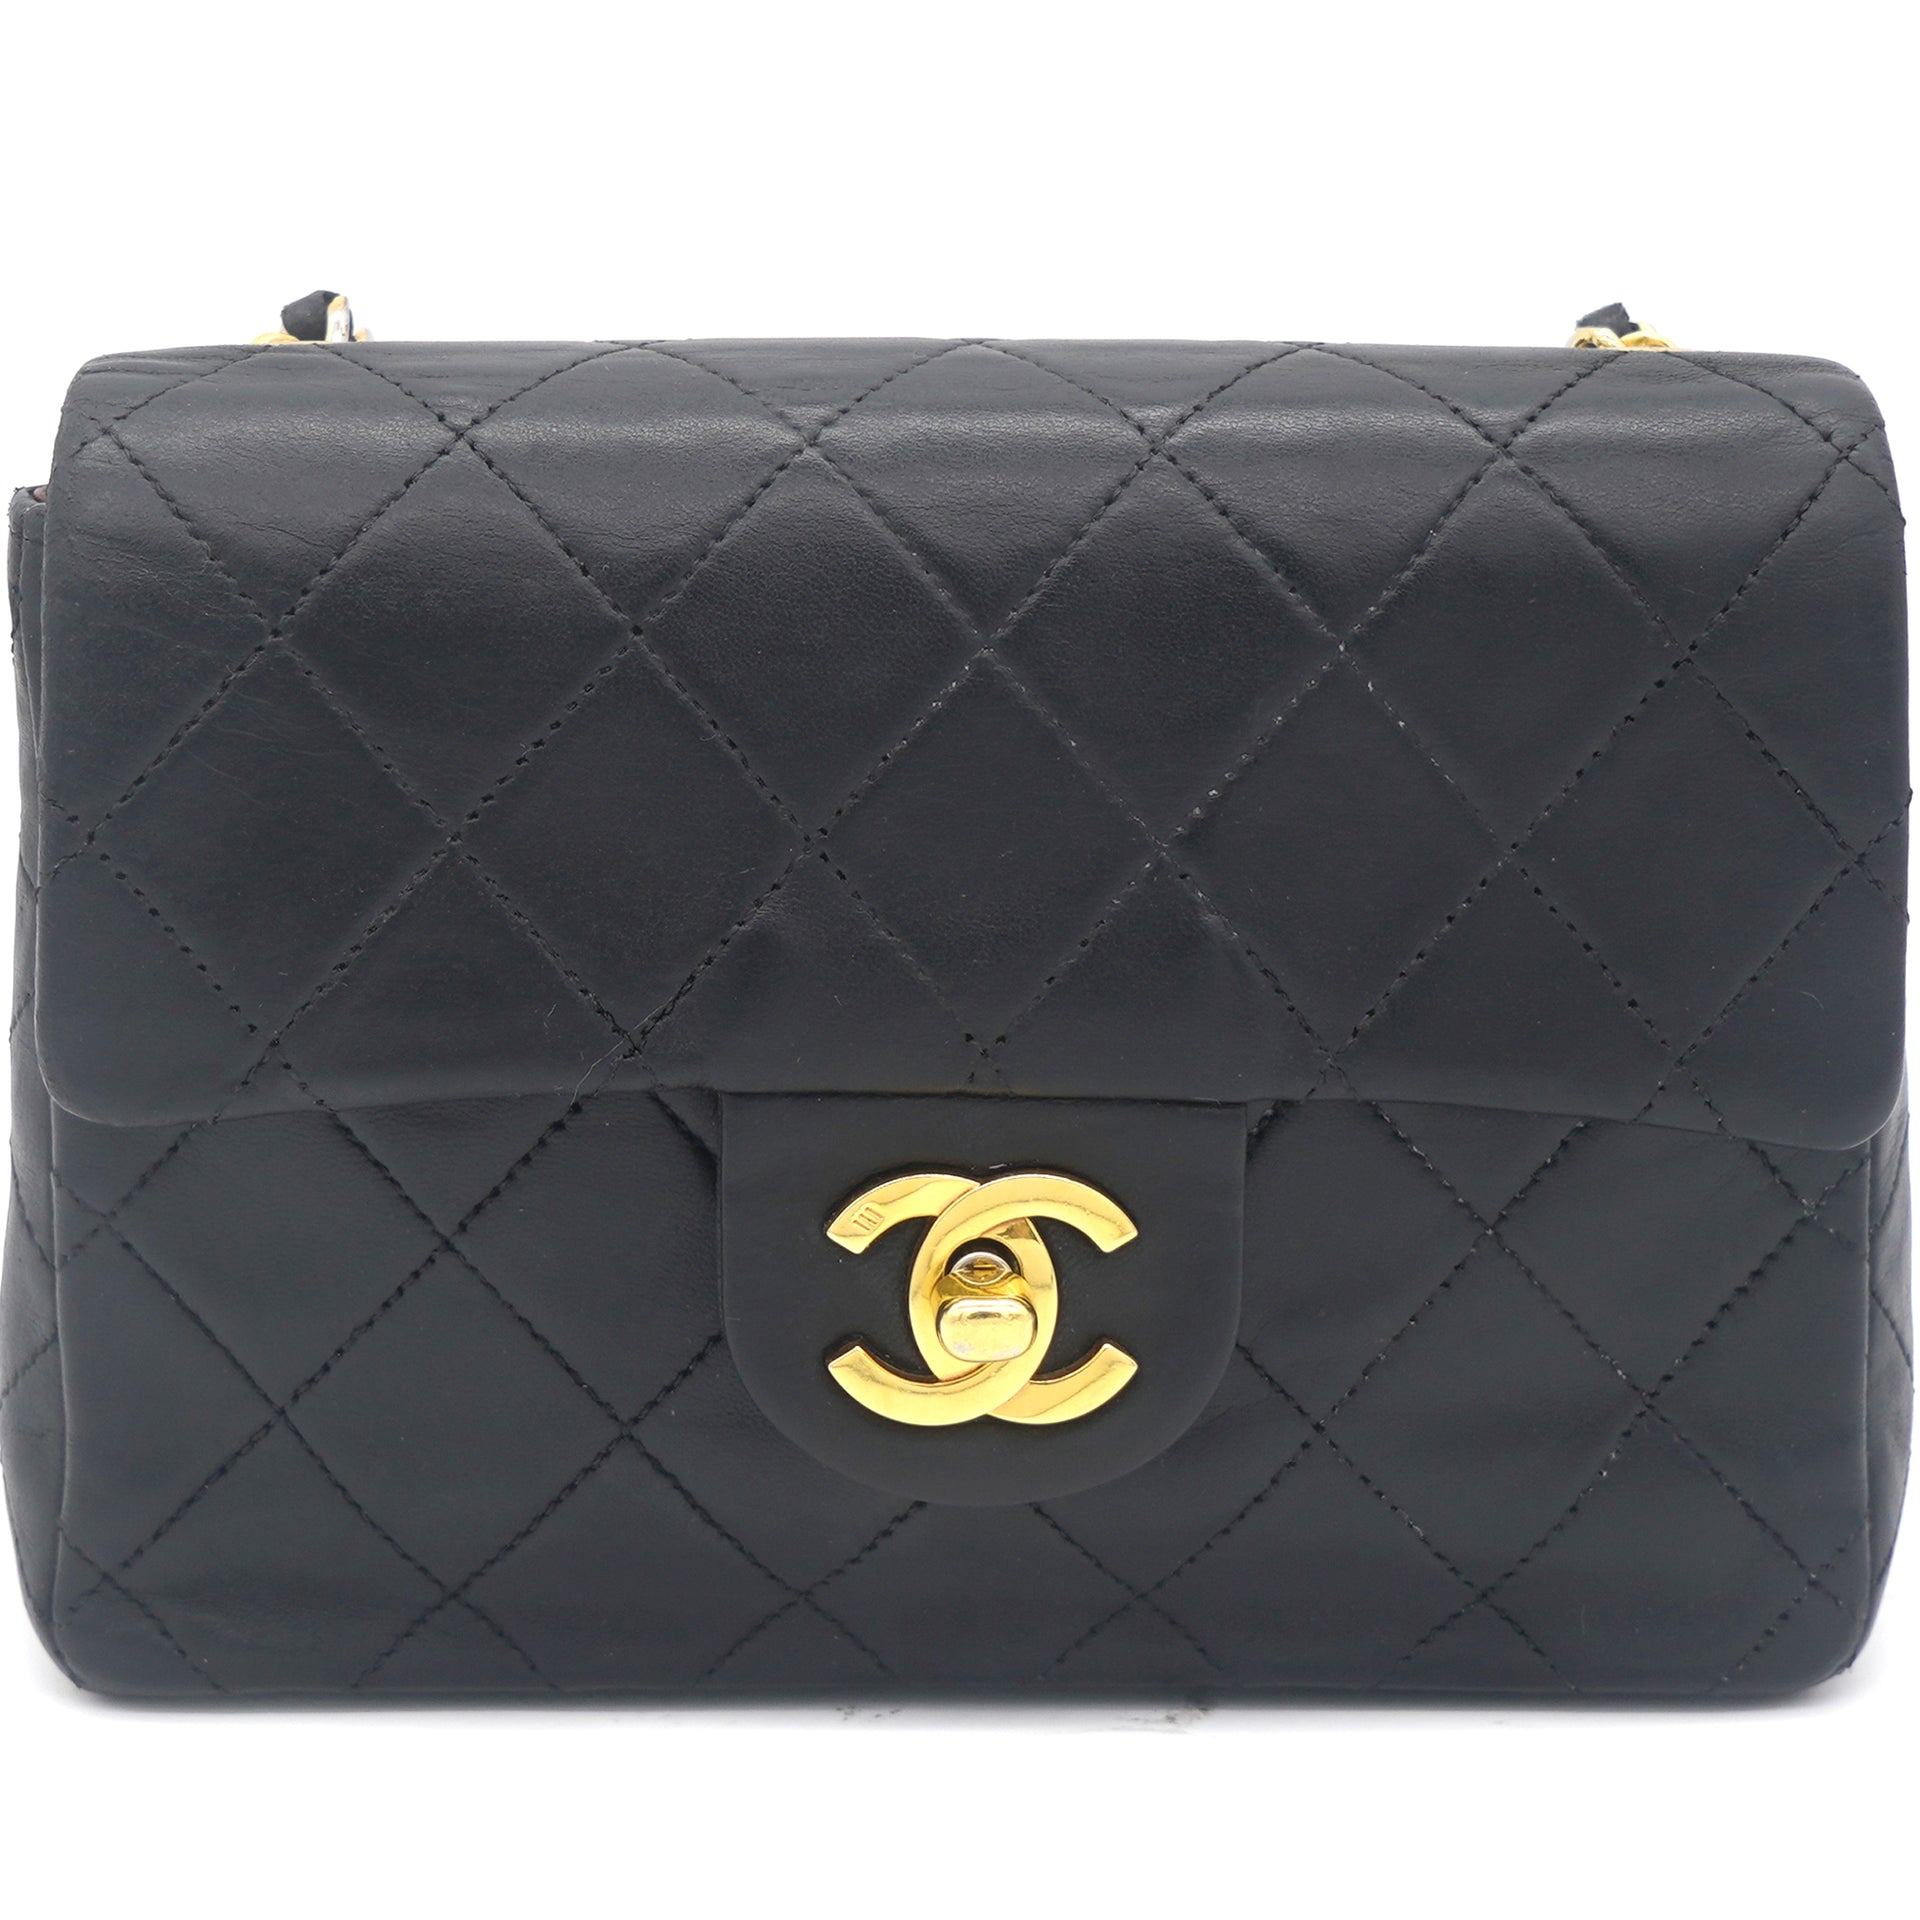 Chanel Mini Square Vintage Flap bag - Touched Vintage